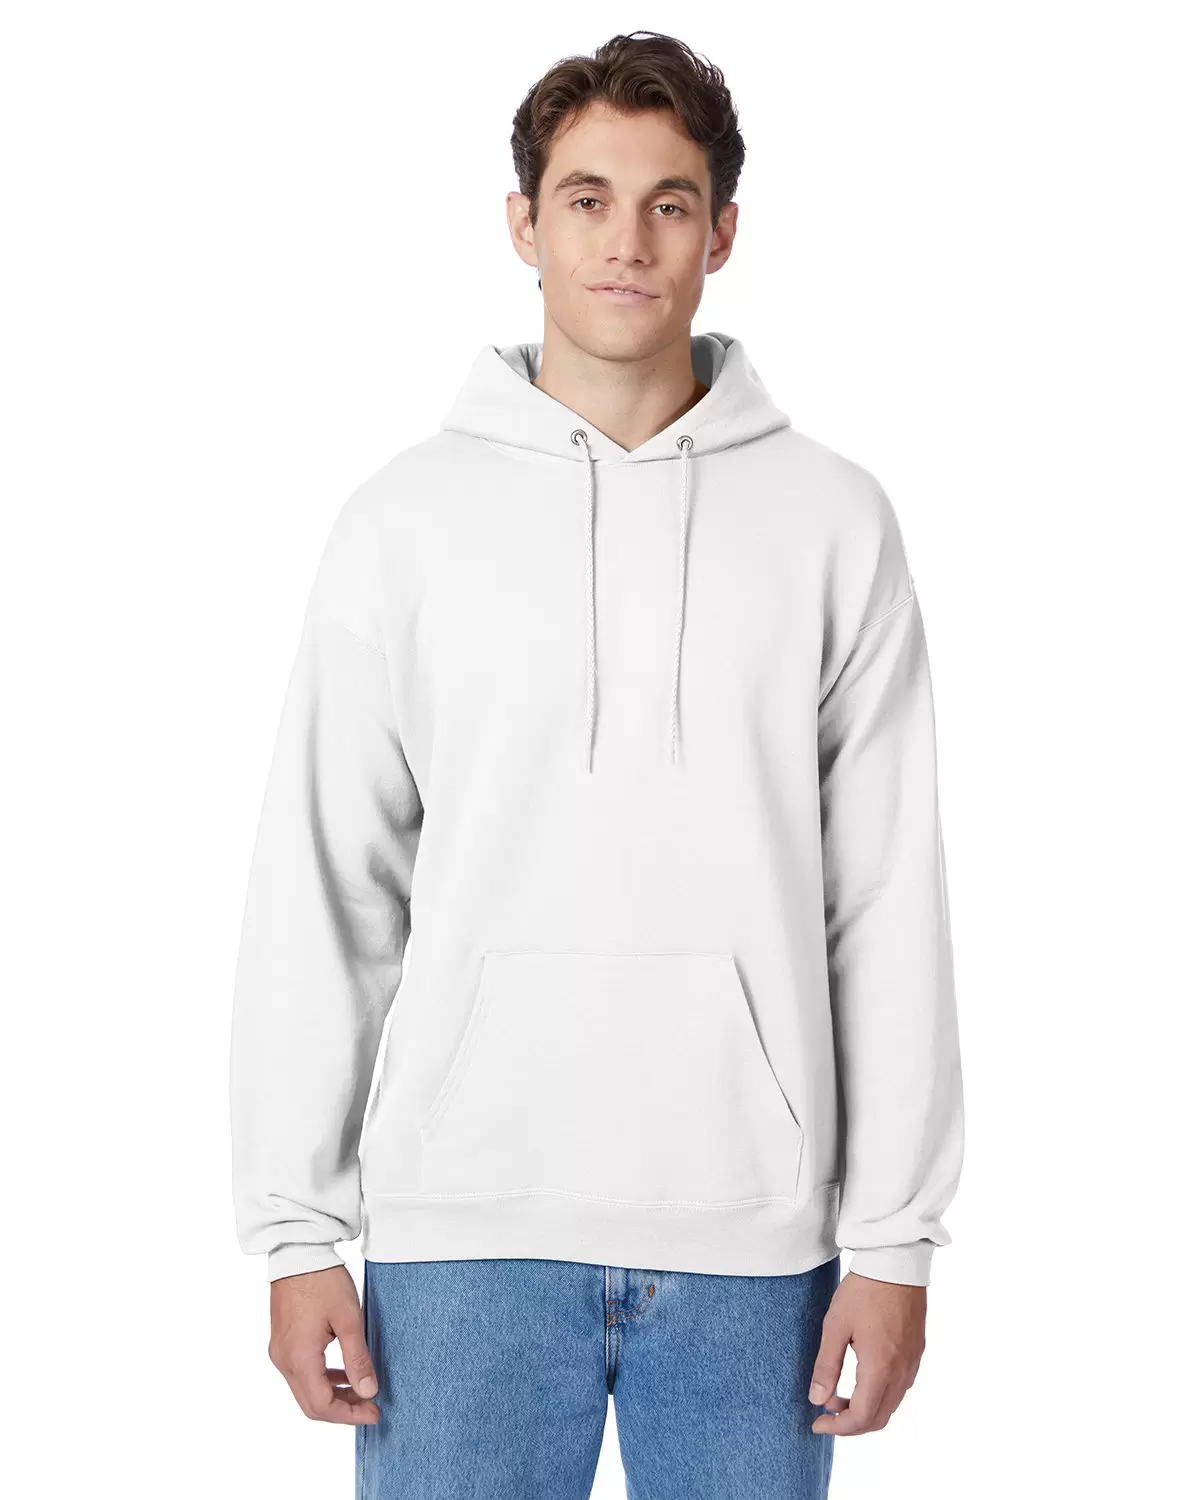 P170 Hanes PrintPro XP Comfortblend Hooded Sweatshirt - From $11.57